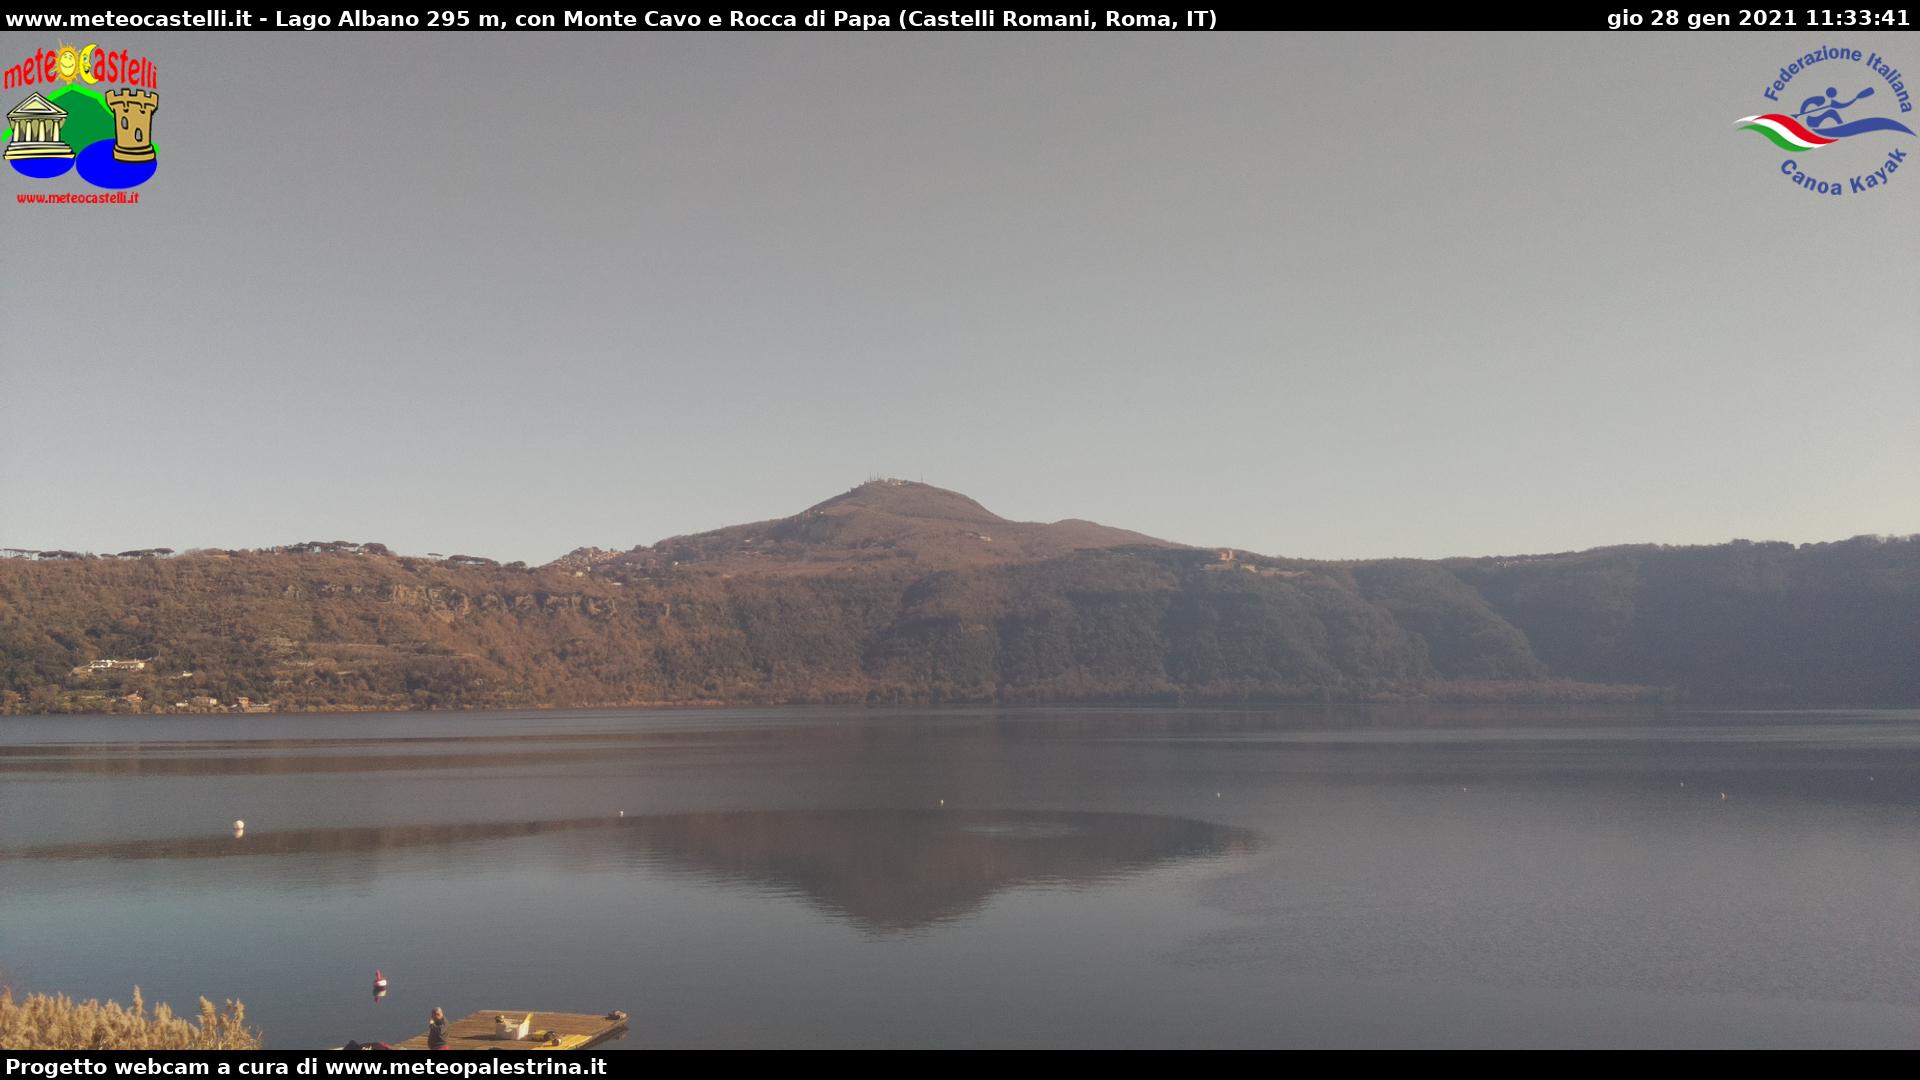 Webcam Castel Gandolfo, Lago Albano - Meteocastelli